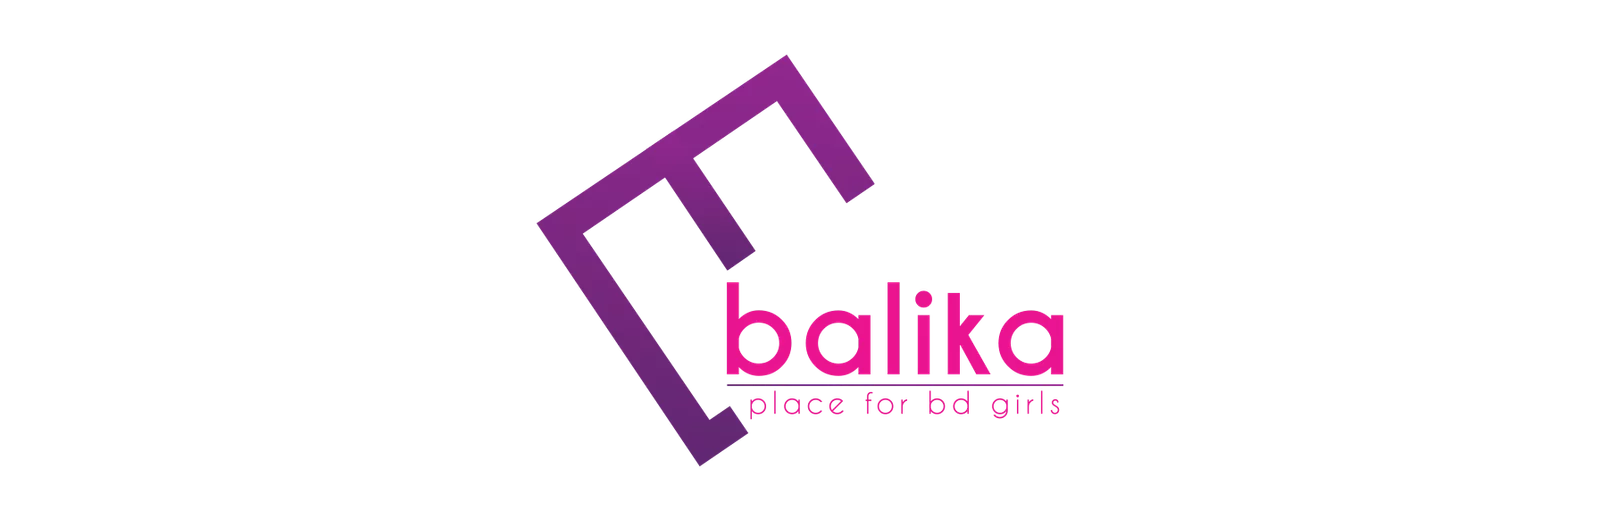 Balika-logo